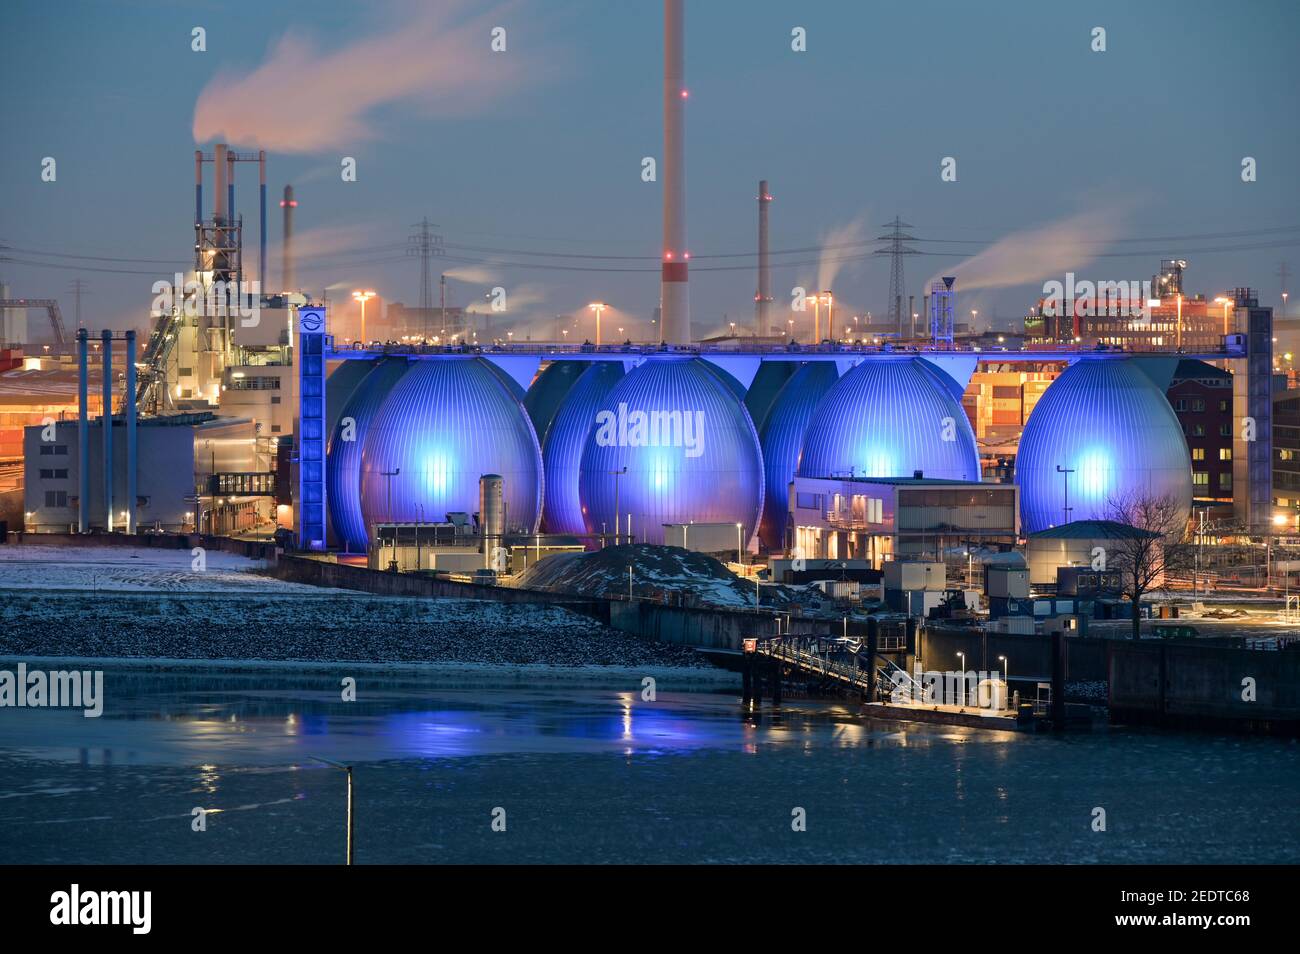 GERMANIA Amburgo, impianto di trattamento delle acque reflue della società di Amburgo acque di processo fognature e fanghi a biogas per l'approvvigionamento di rete pubblica di gas, impianti di biogas, serbatoi di fermentazione e turbina eolica Nordex Foto Stock